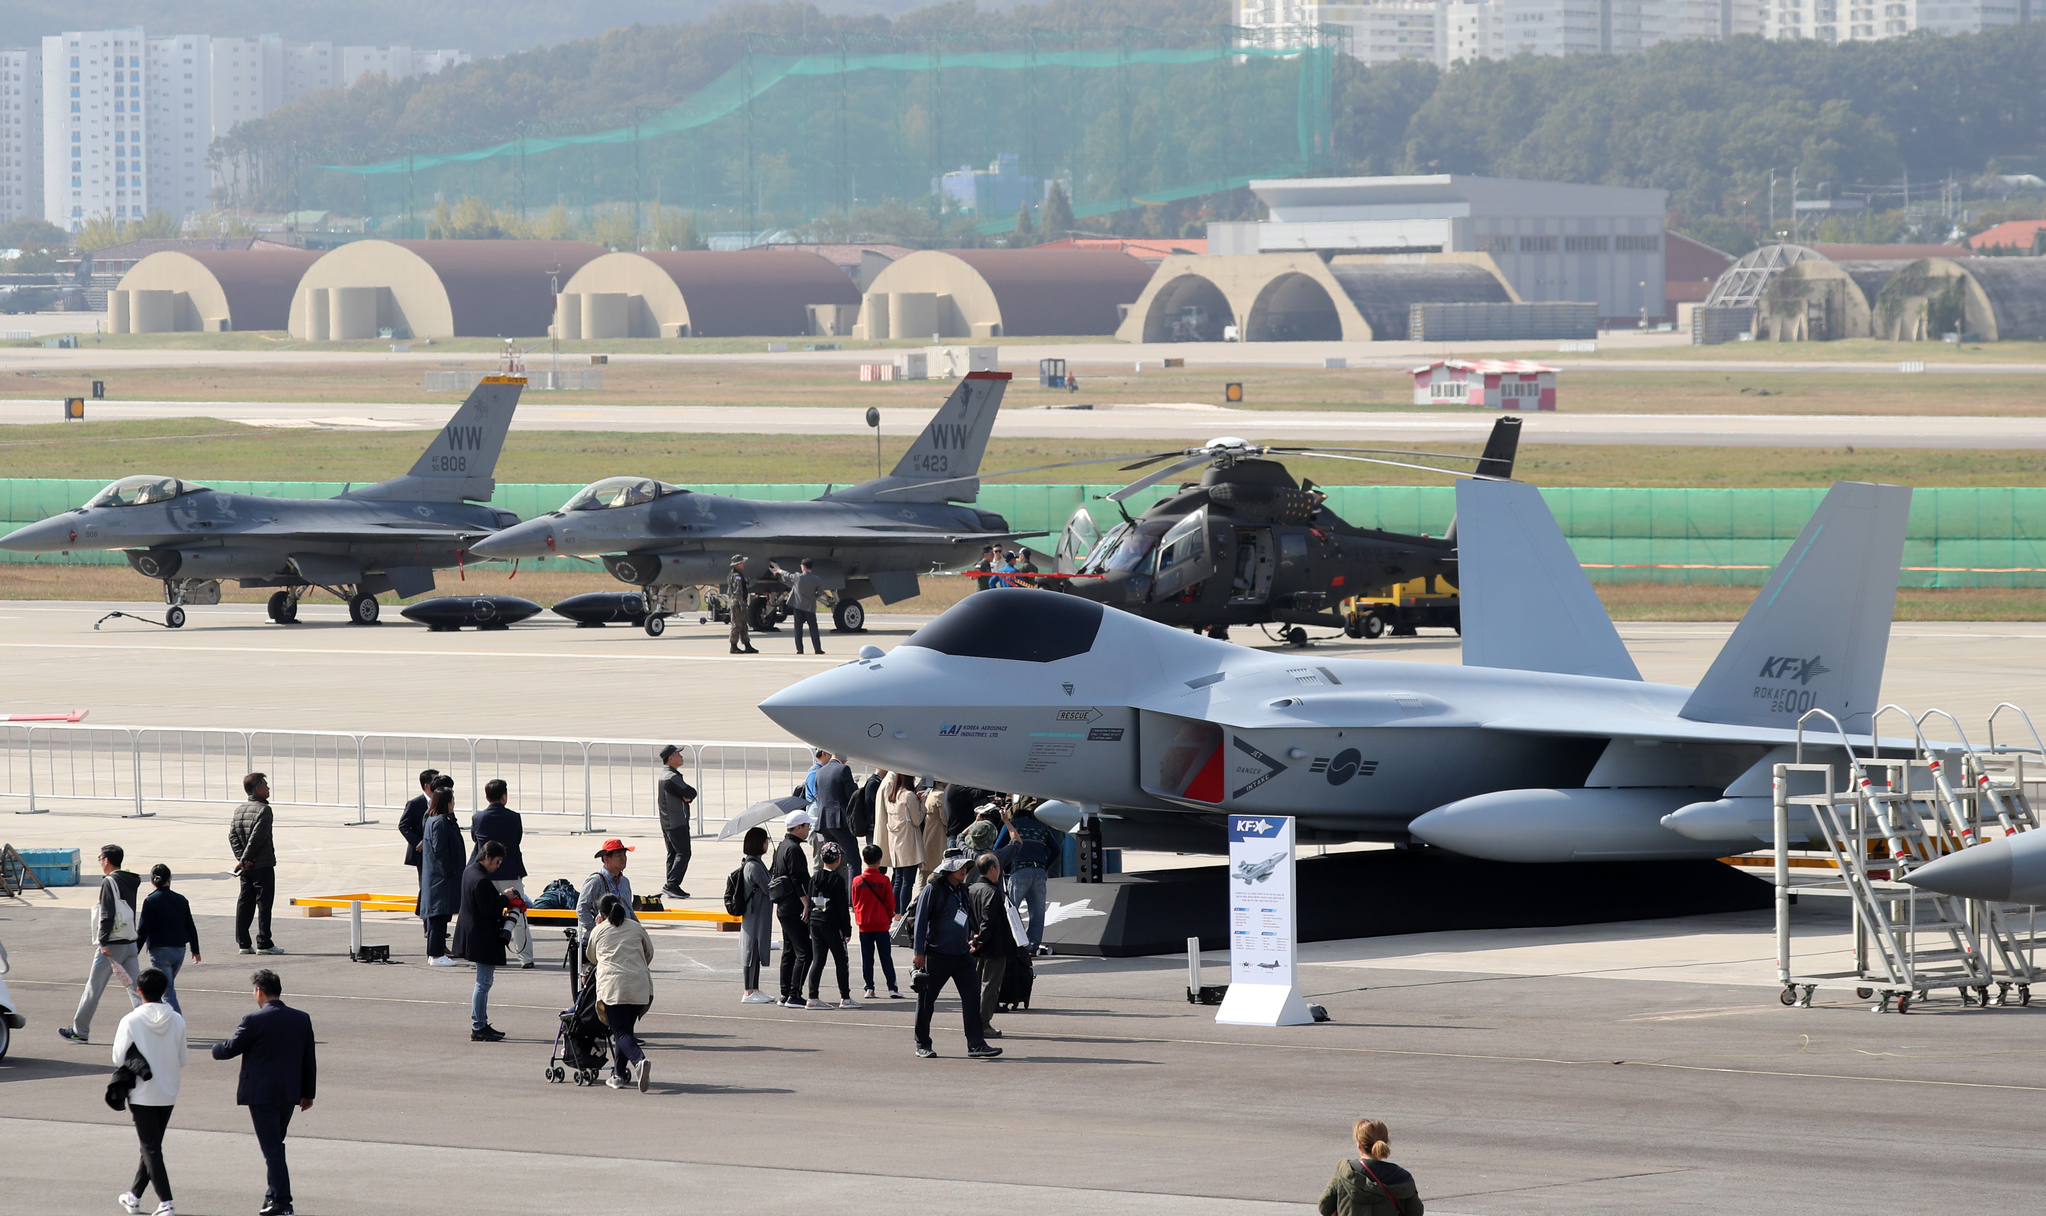 14일 오전 경기도 성남시 서울공항에서 열린 서울 국제 항공우주 및 방위산업 전시회 2019(서울 ADEX 2019) 프레스 데이에 한국형 전투기 KF-X, 소형무장헬기(LAH), F-35A 등 다양한 항공장비가 전시돼 있다. 이번 전시회는 오는 15일부터 20일까지 6일간 개최된다. [뉴스1]